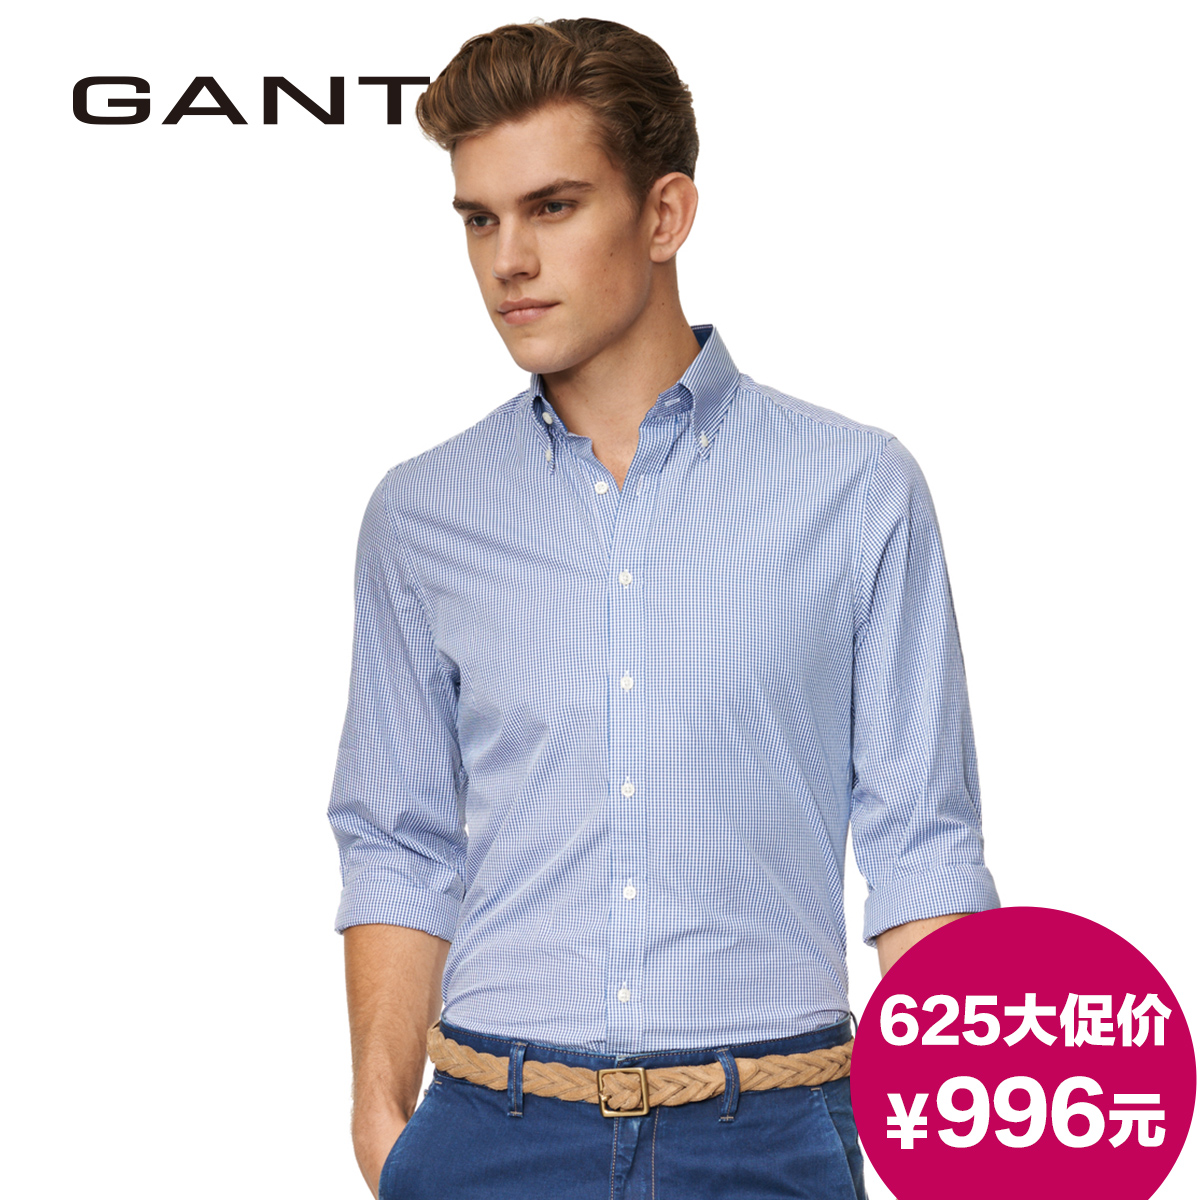   Gant/Gantt